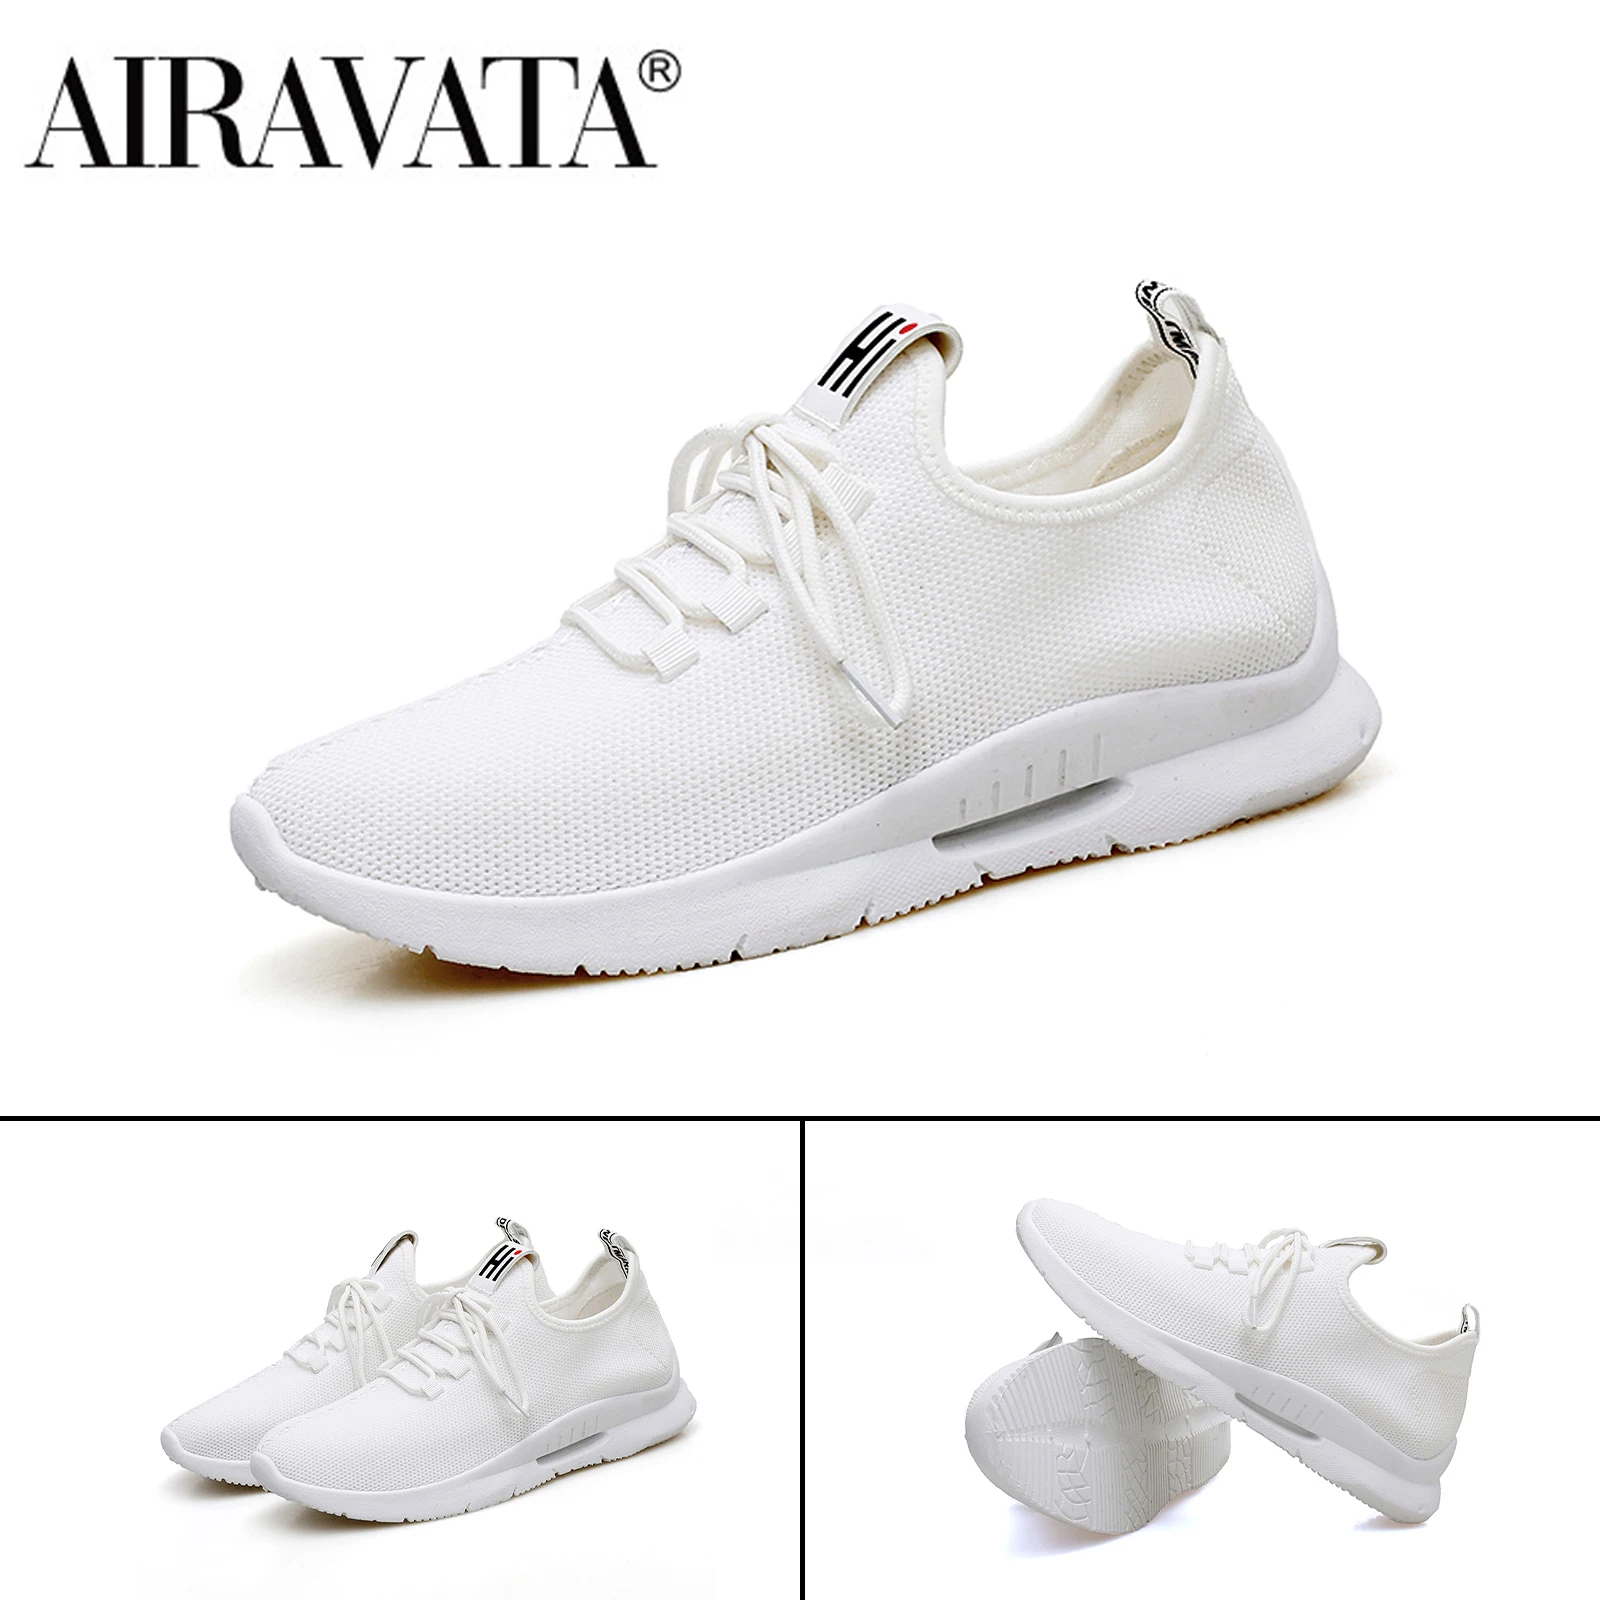 

Airavata мужские весенние/осенние кроссовки обувь для бега спорт отдых дышащие обтягивающие и красивые модные плоские прогулки